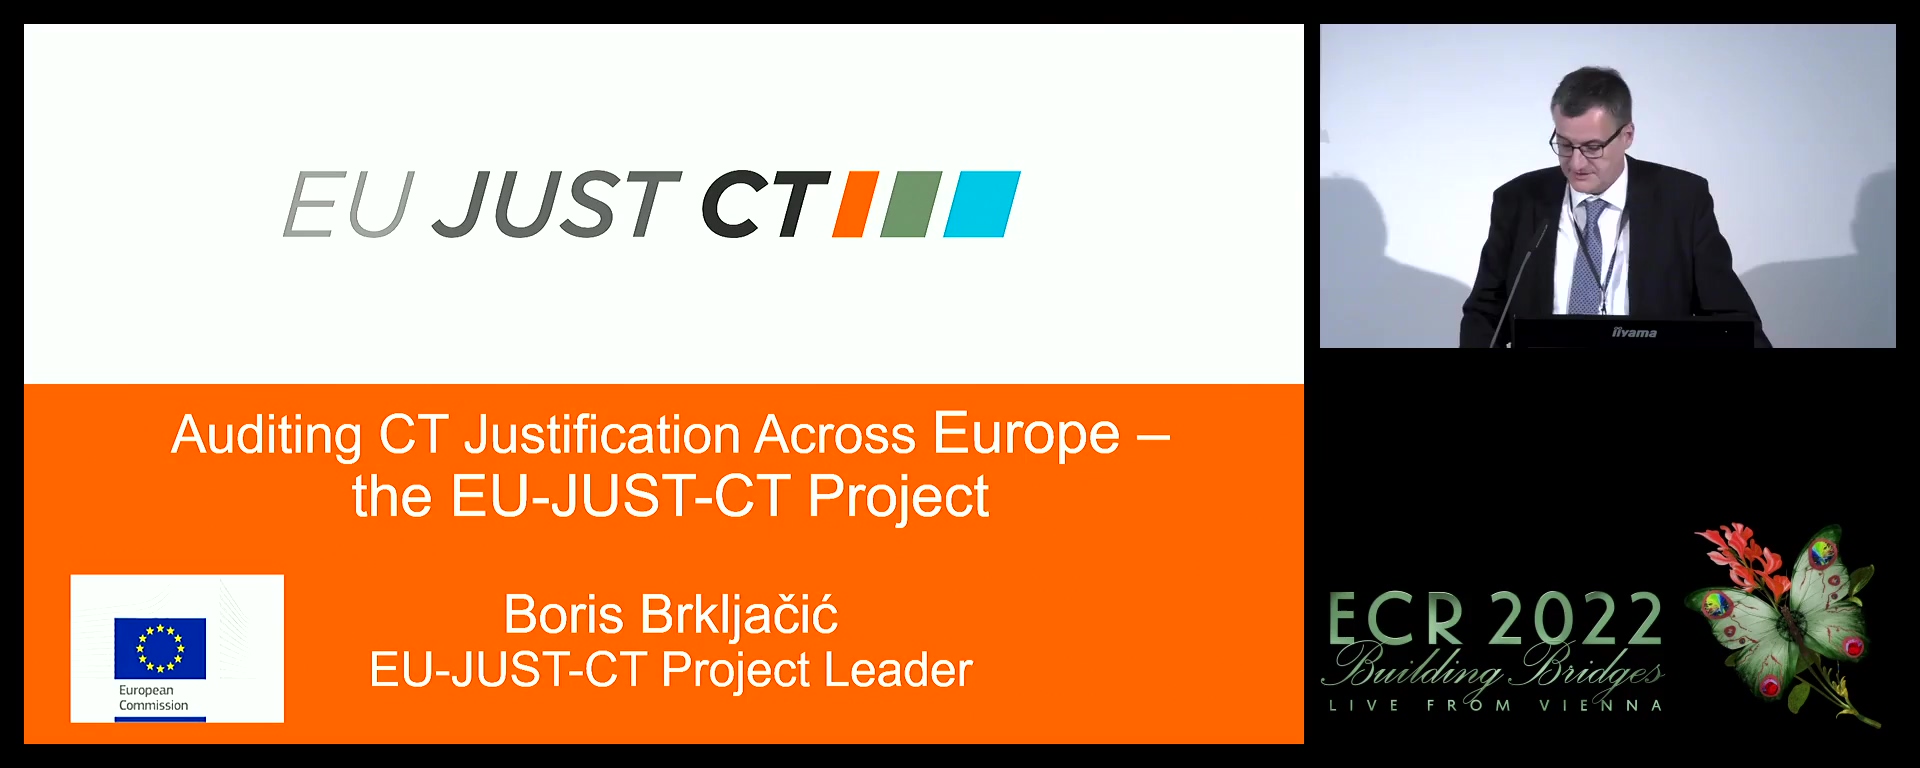 EU-JUST-CT project: importance and aims – ESR's view - Boris Brkljačić, Zagreb / HR